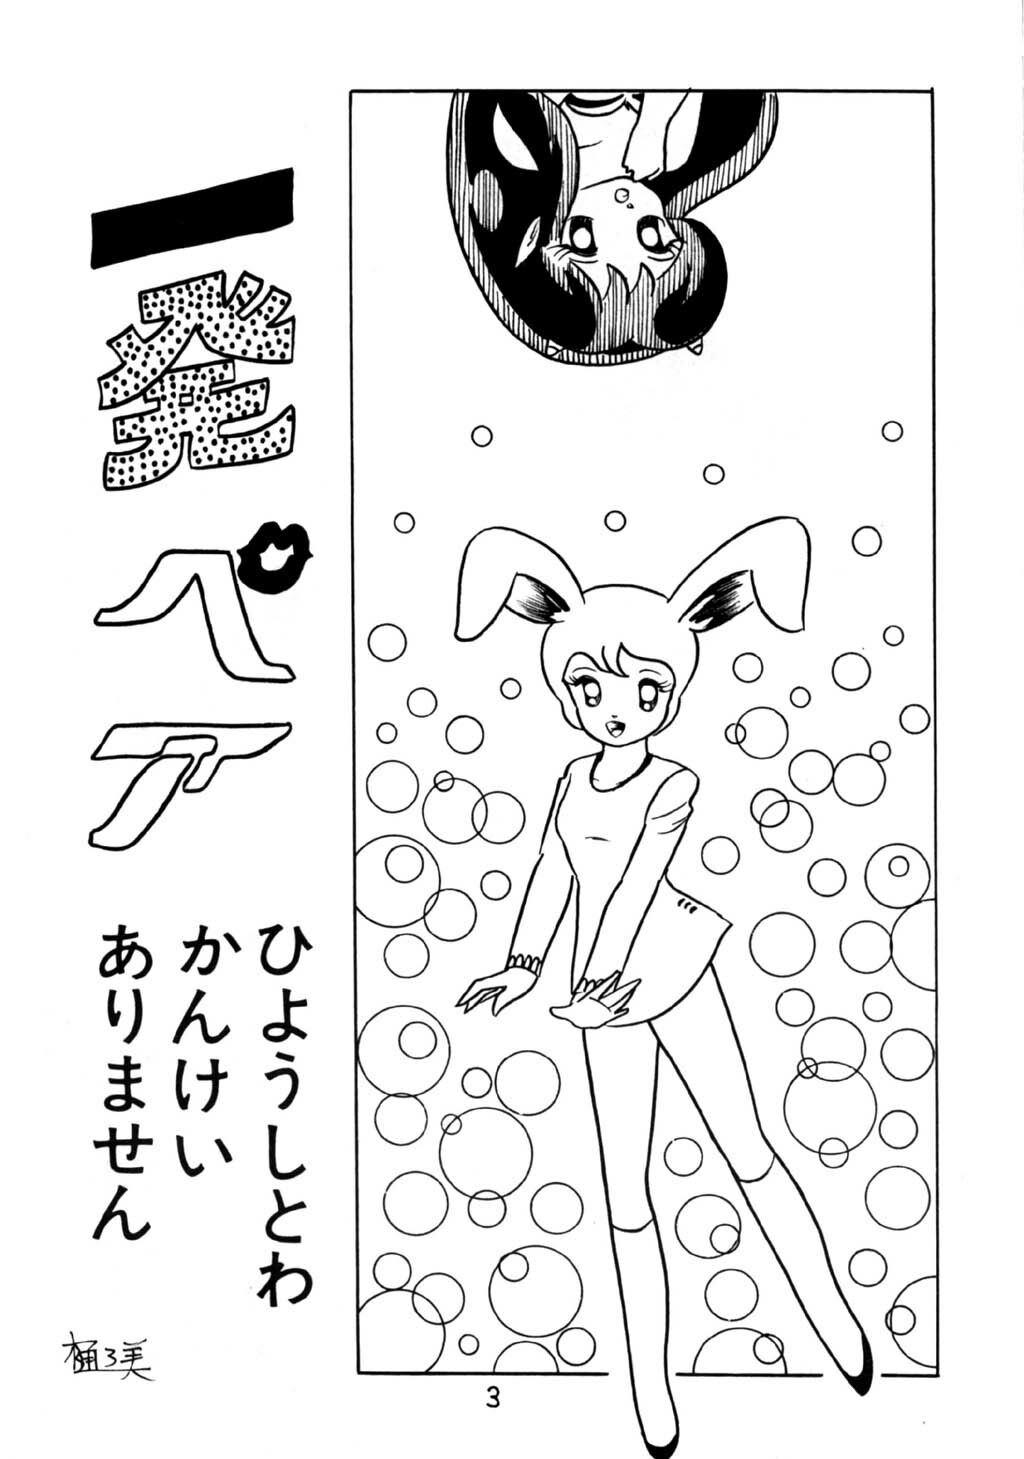 [Puchi Bunny-sha] Puchi Bunny 2 (Dirty Pair) page 3 full